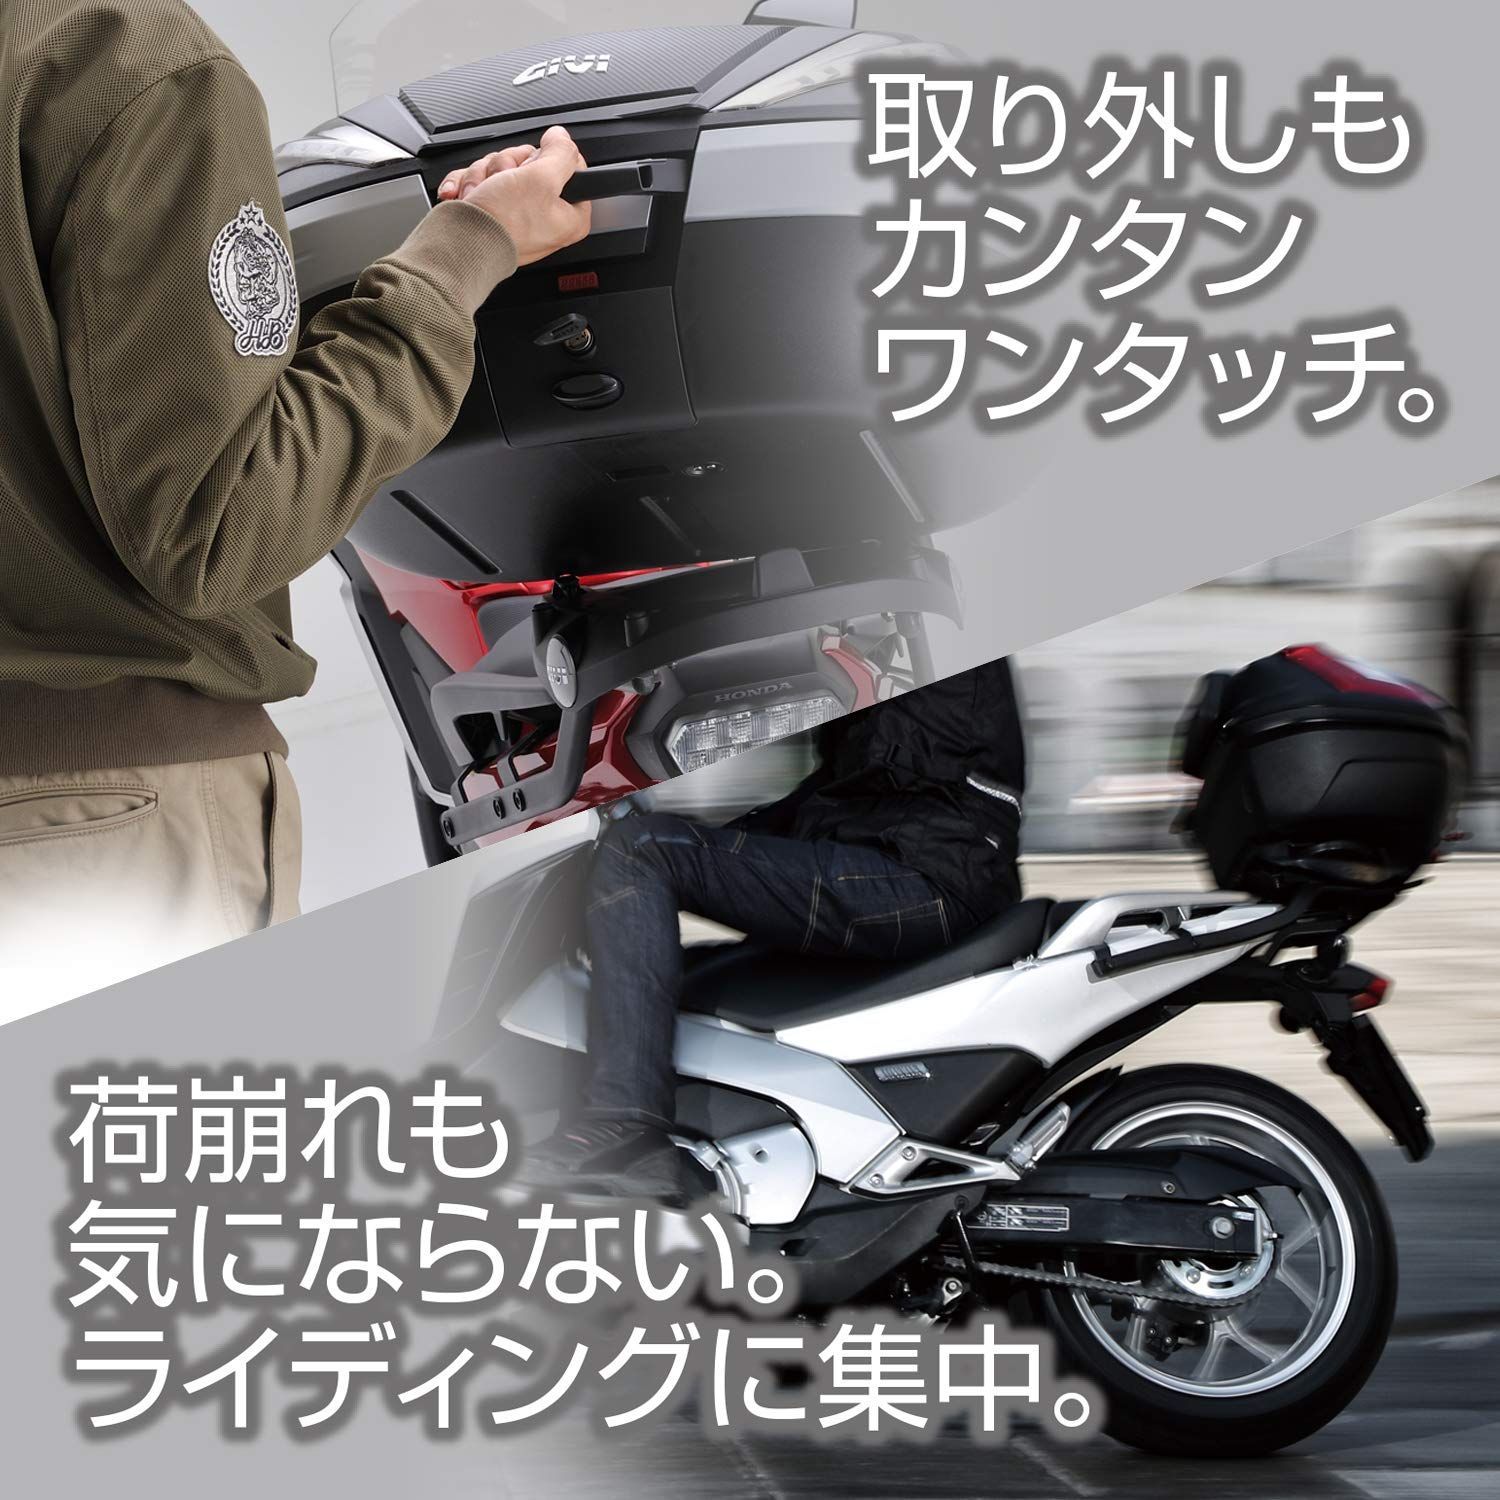 新品 GIVI (ジビ) バイク用 リアボックス バックレスト - メルカリ